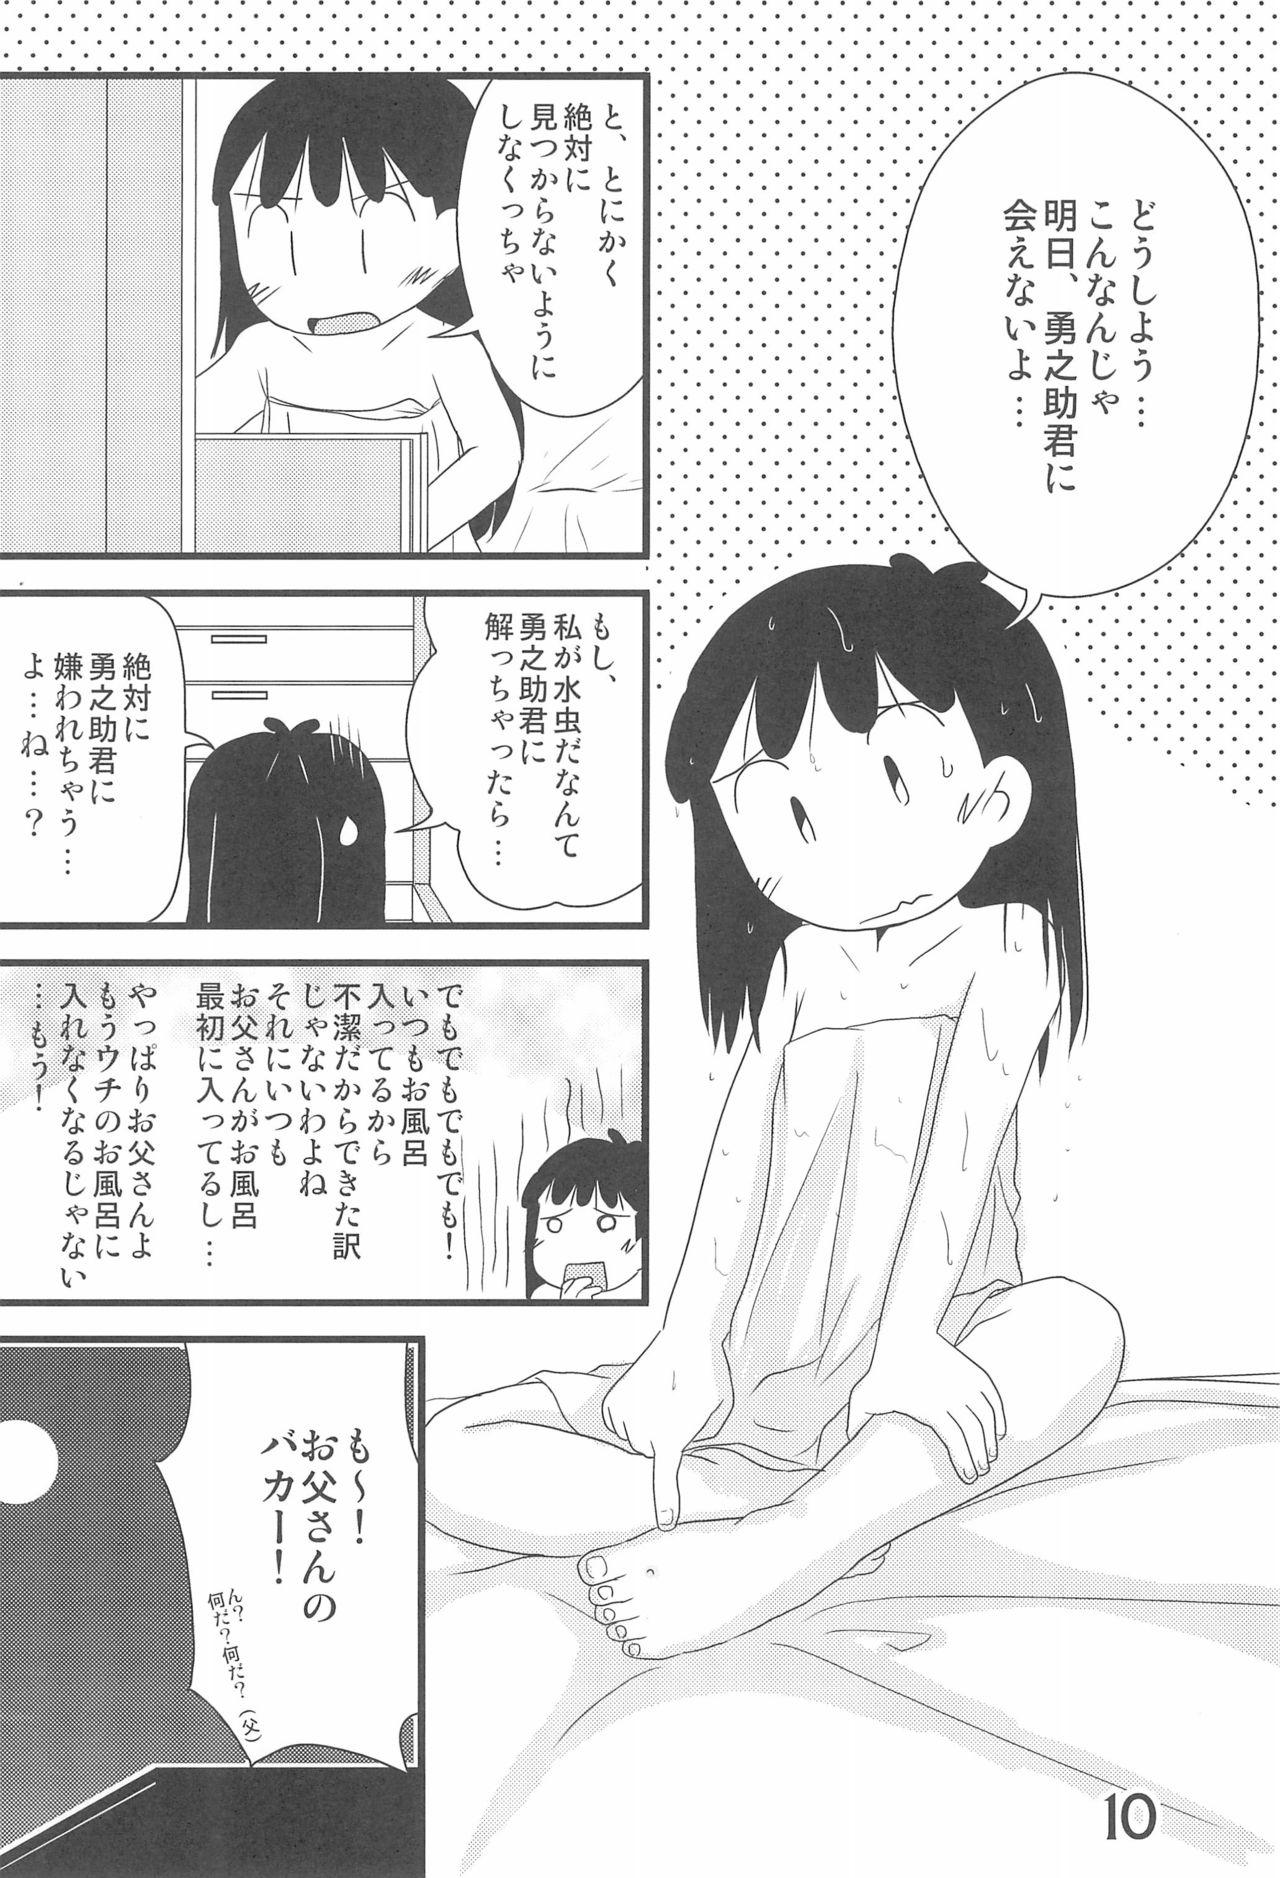 Bunda Iron-na Hadashi no Onnanoko - Azuki chan Tugjob - Page 10